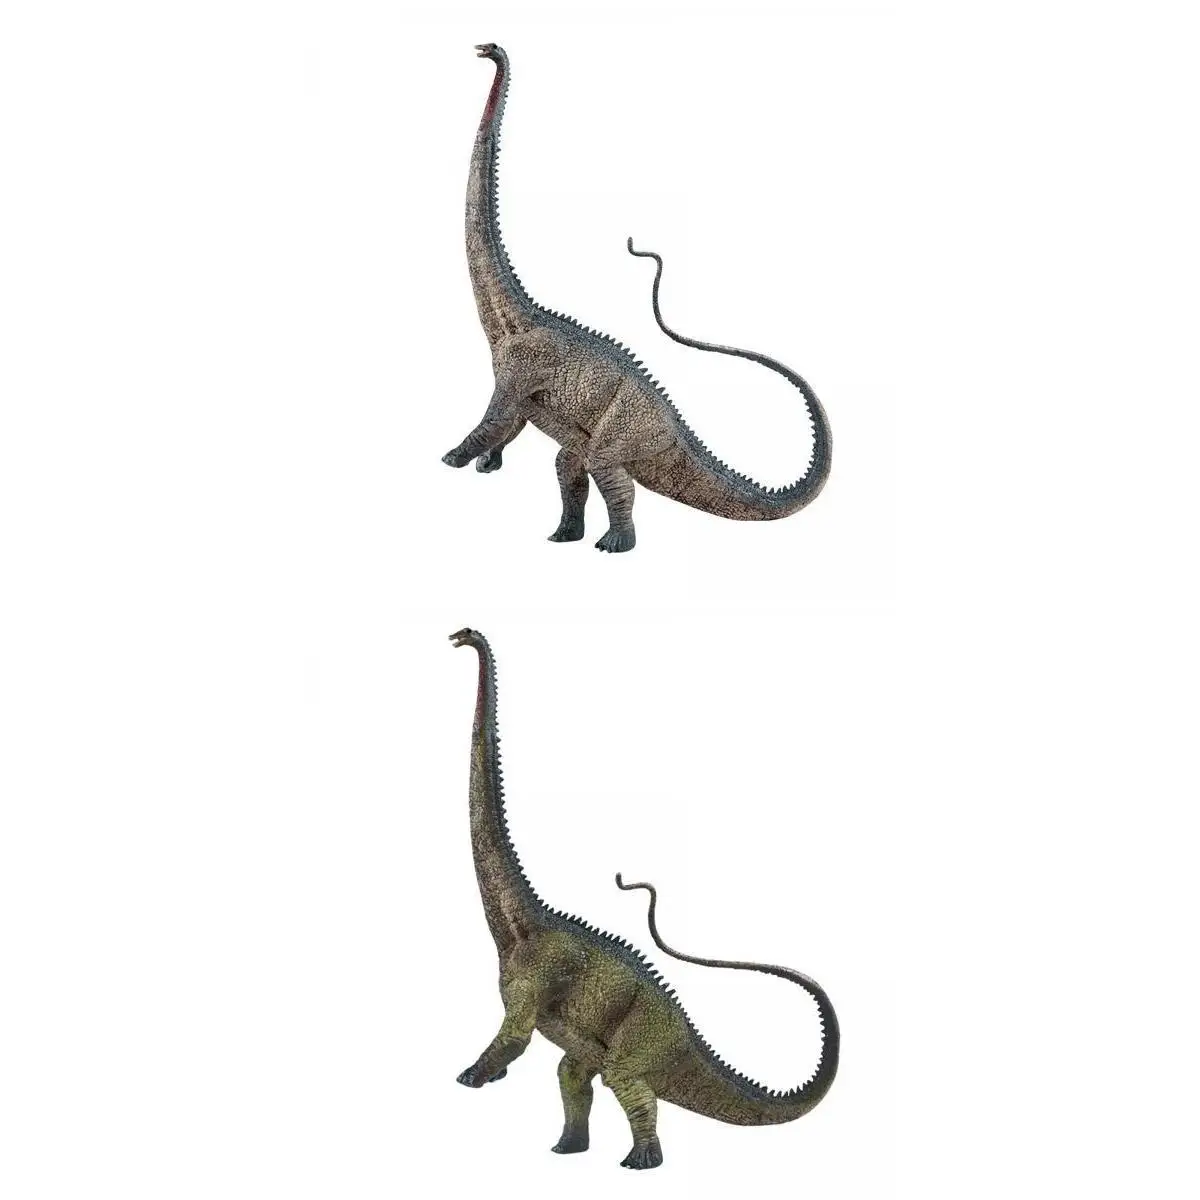  2pcs Realistic Dinosaur Figures Toy Action Figure for Shelf Decor 